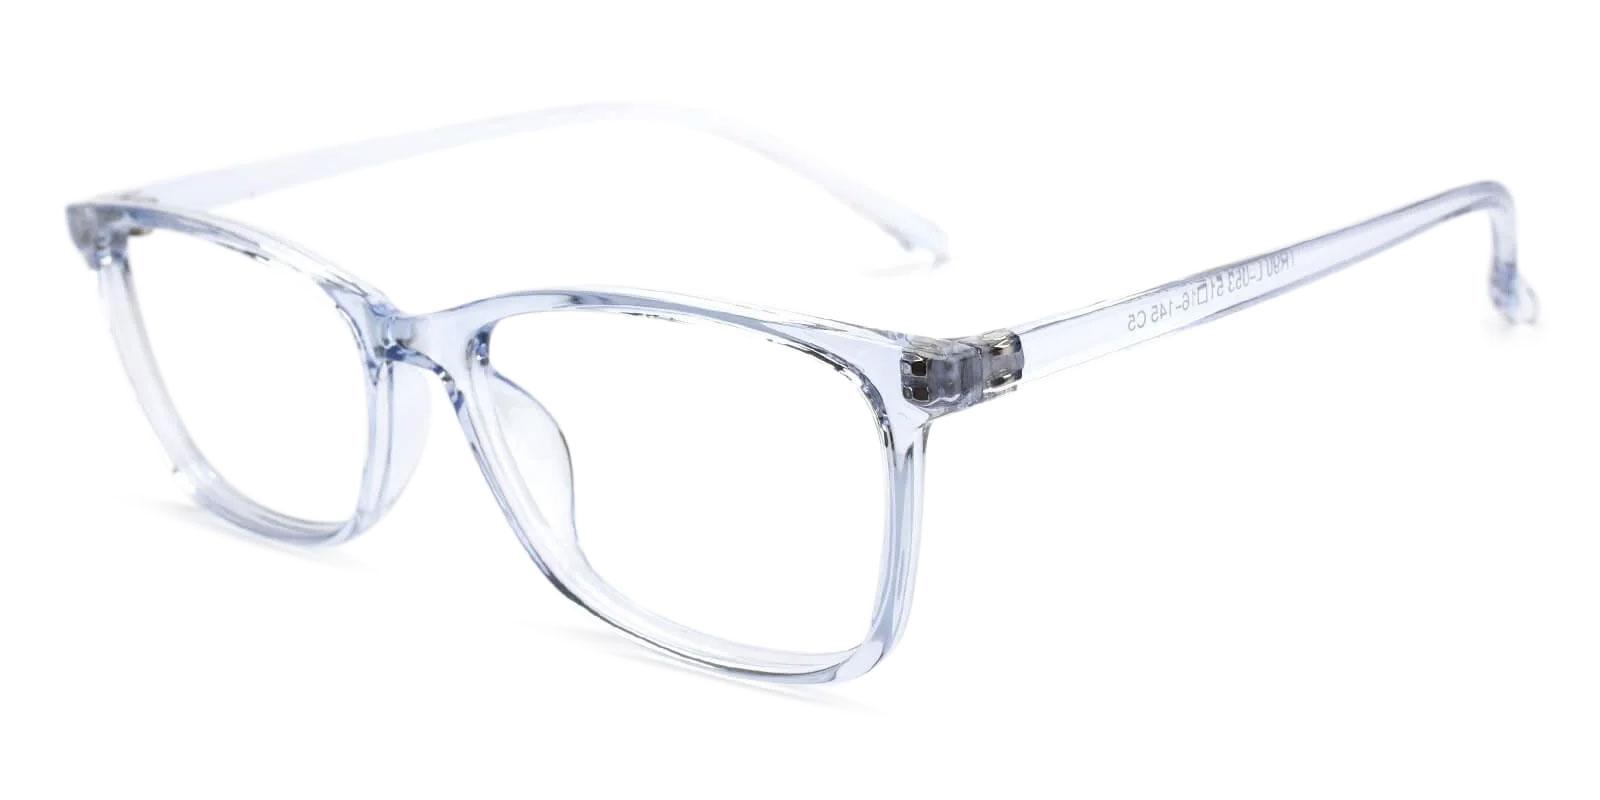 Marvel Blue TR Eyeglasses , UniversalBridgeFit , Lightweight Frames from ABBE Glasses